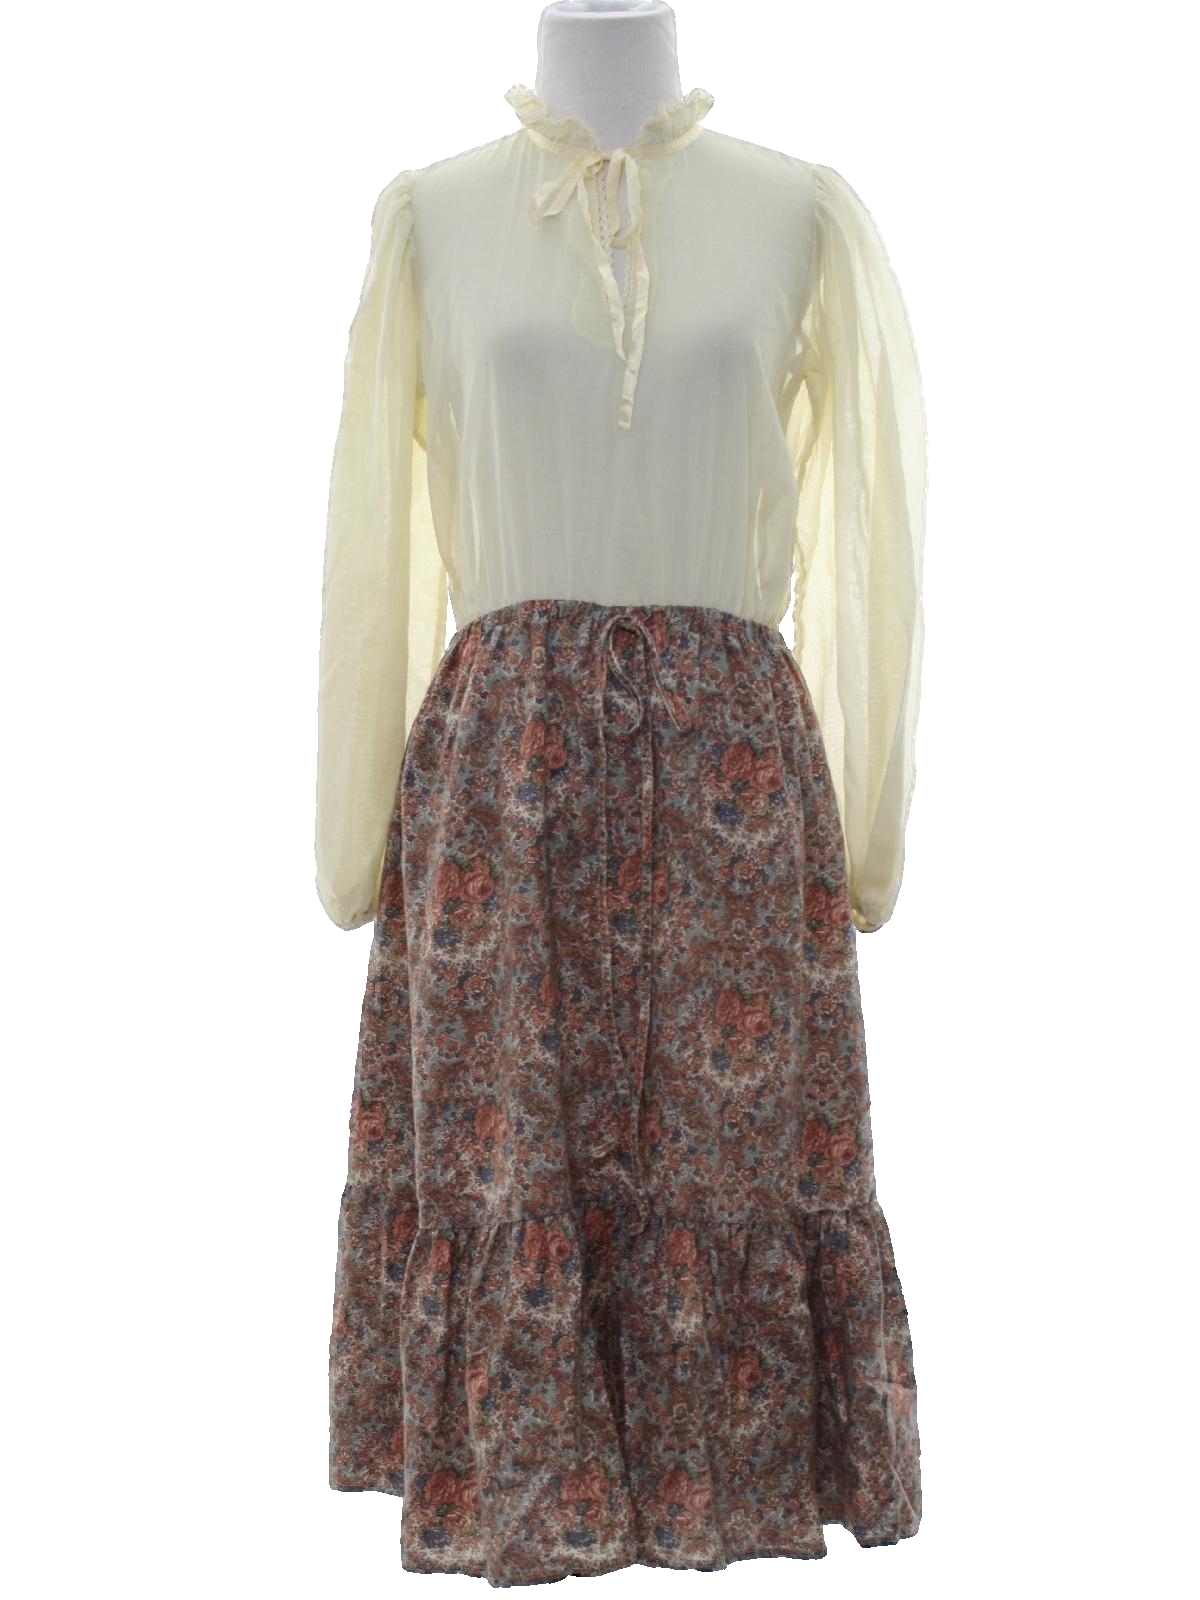 Seventies Rae Hepburn Hippie Dress: Late 70s or Early 80s -Rae Hepburn ...